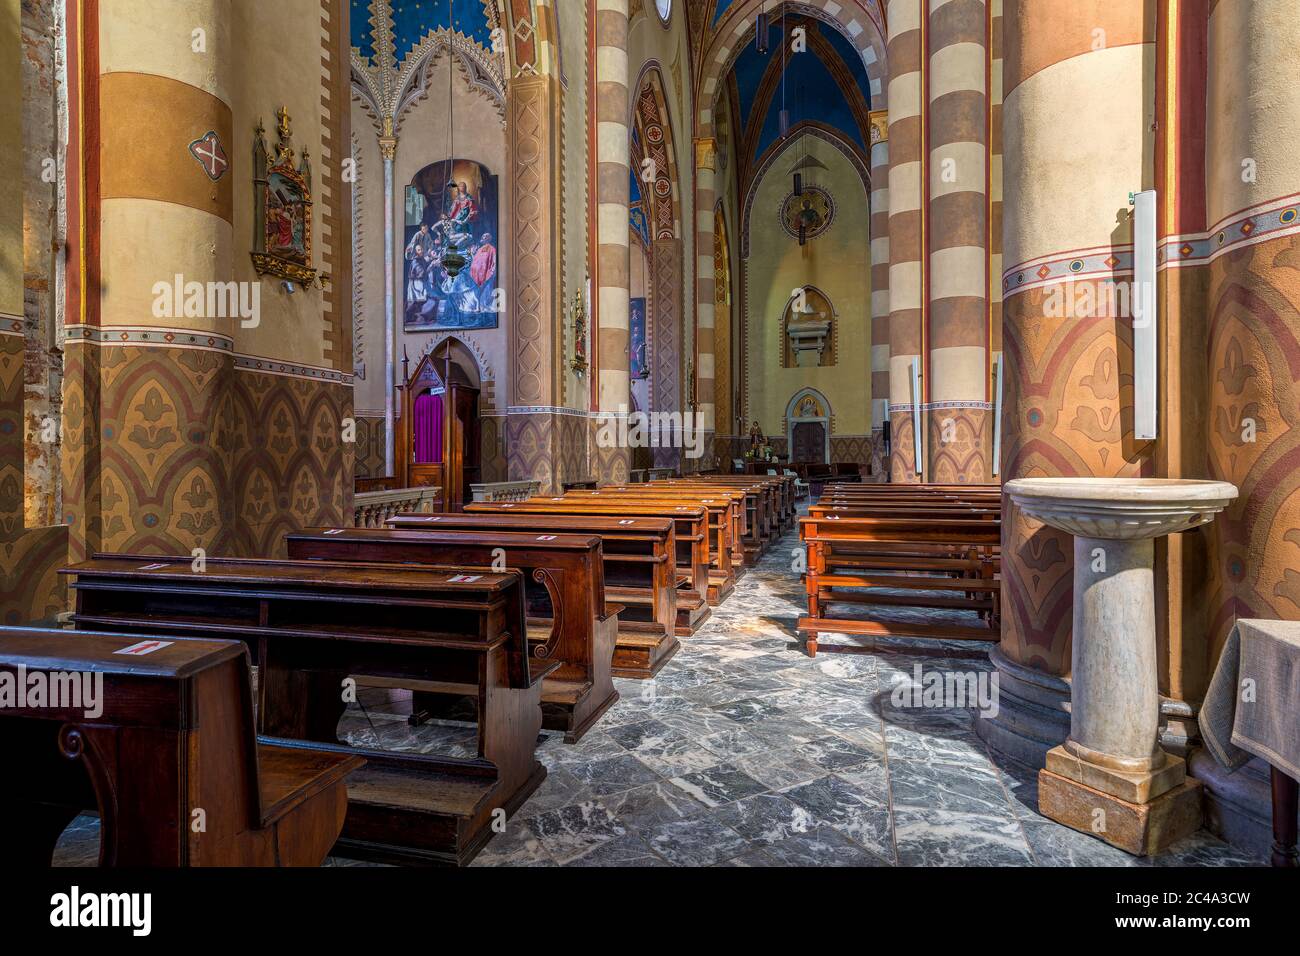 Holzbänke, Seitenschiff und Säulen im Inneren von San Lorenzo - einer römisch-katholischen Kathedrale alias Duomo in Alba, Italien. Stockfoto